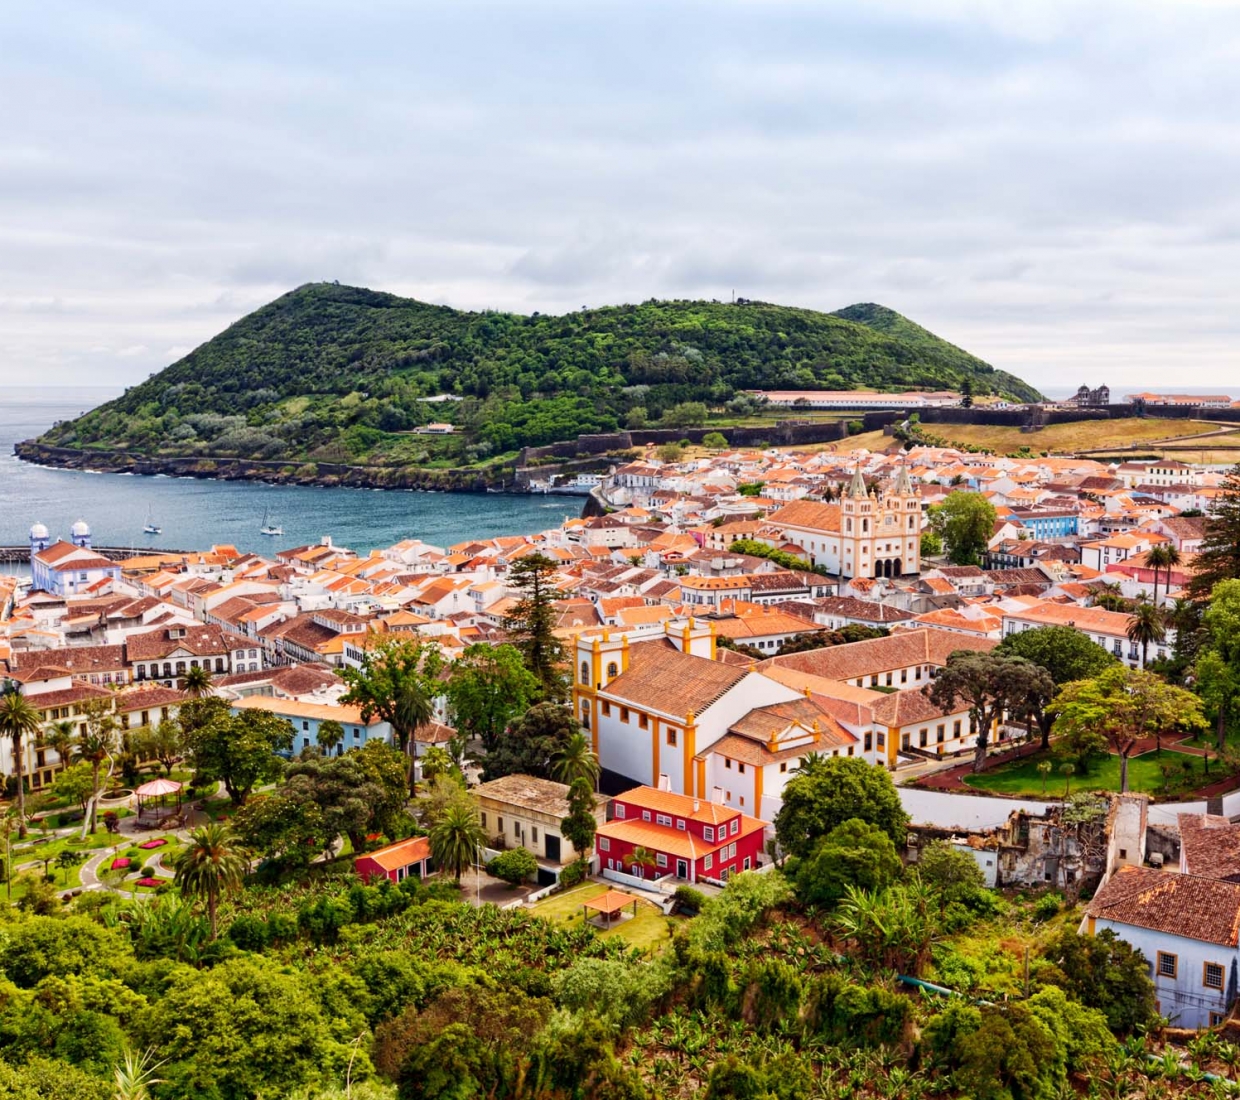 Seleção dos melhores e mais bonitos hotéis e casas de férias em Terceira